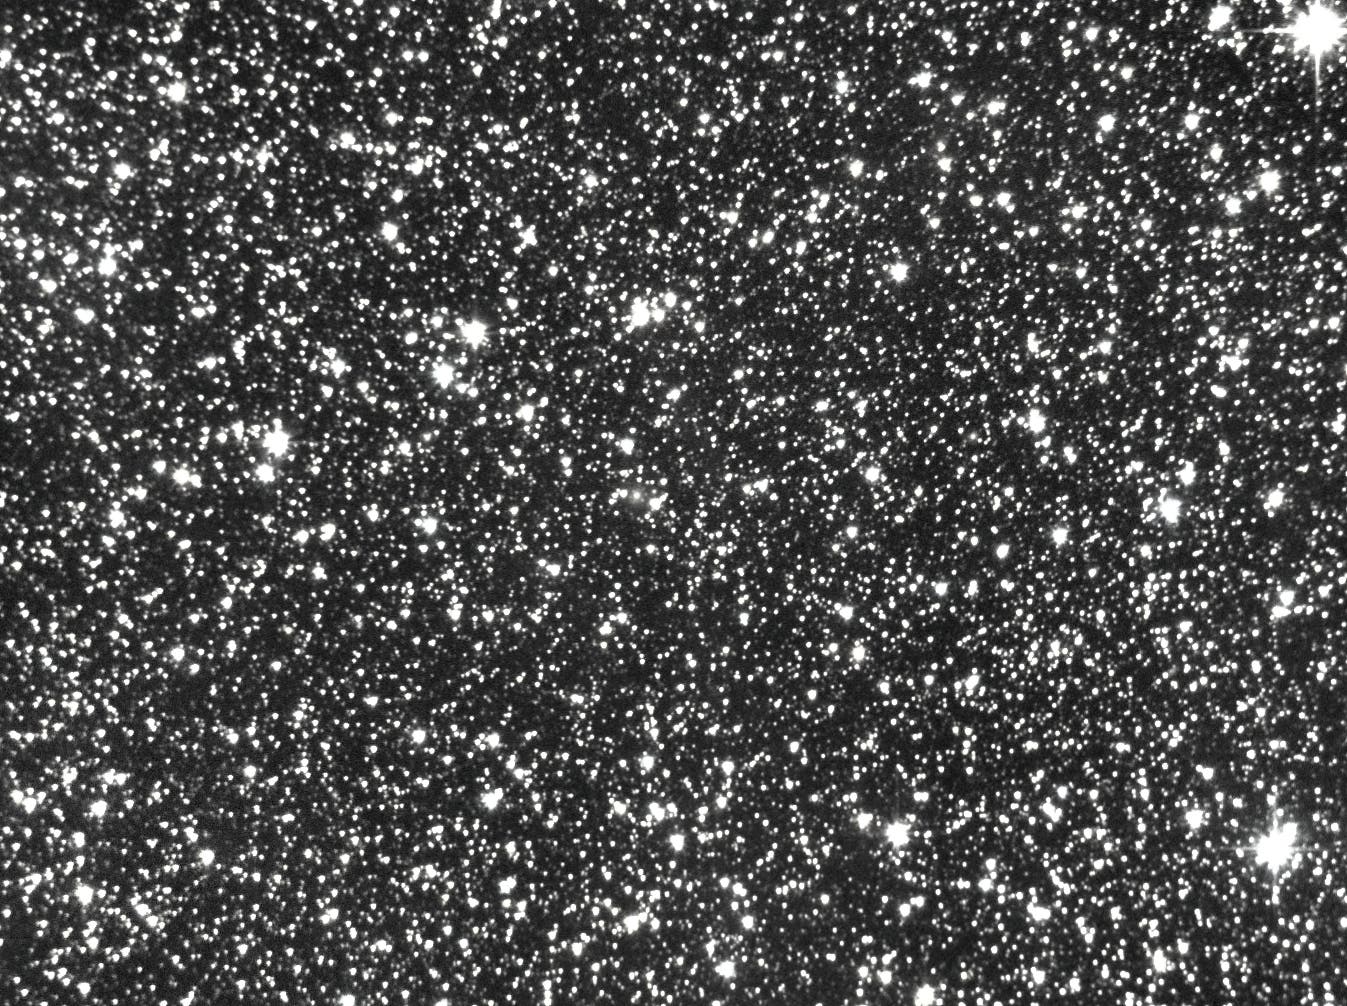 Radiogalaxie Cygnus A (3C 405)